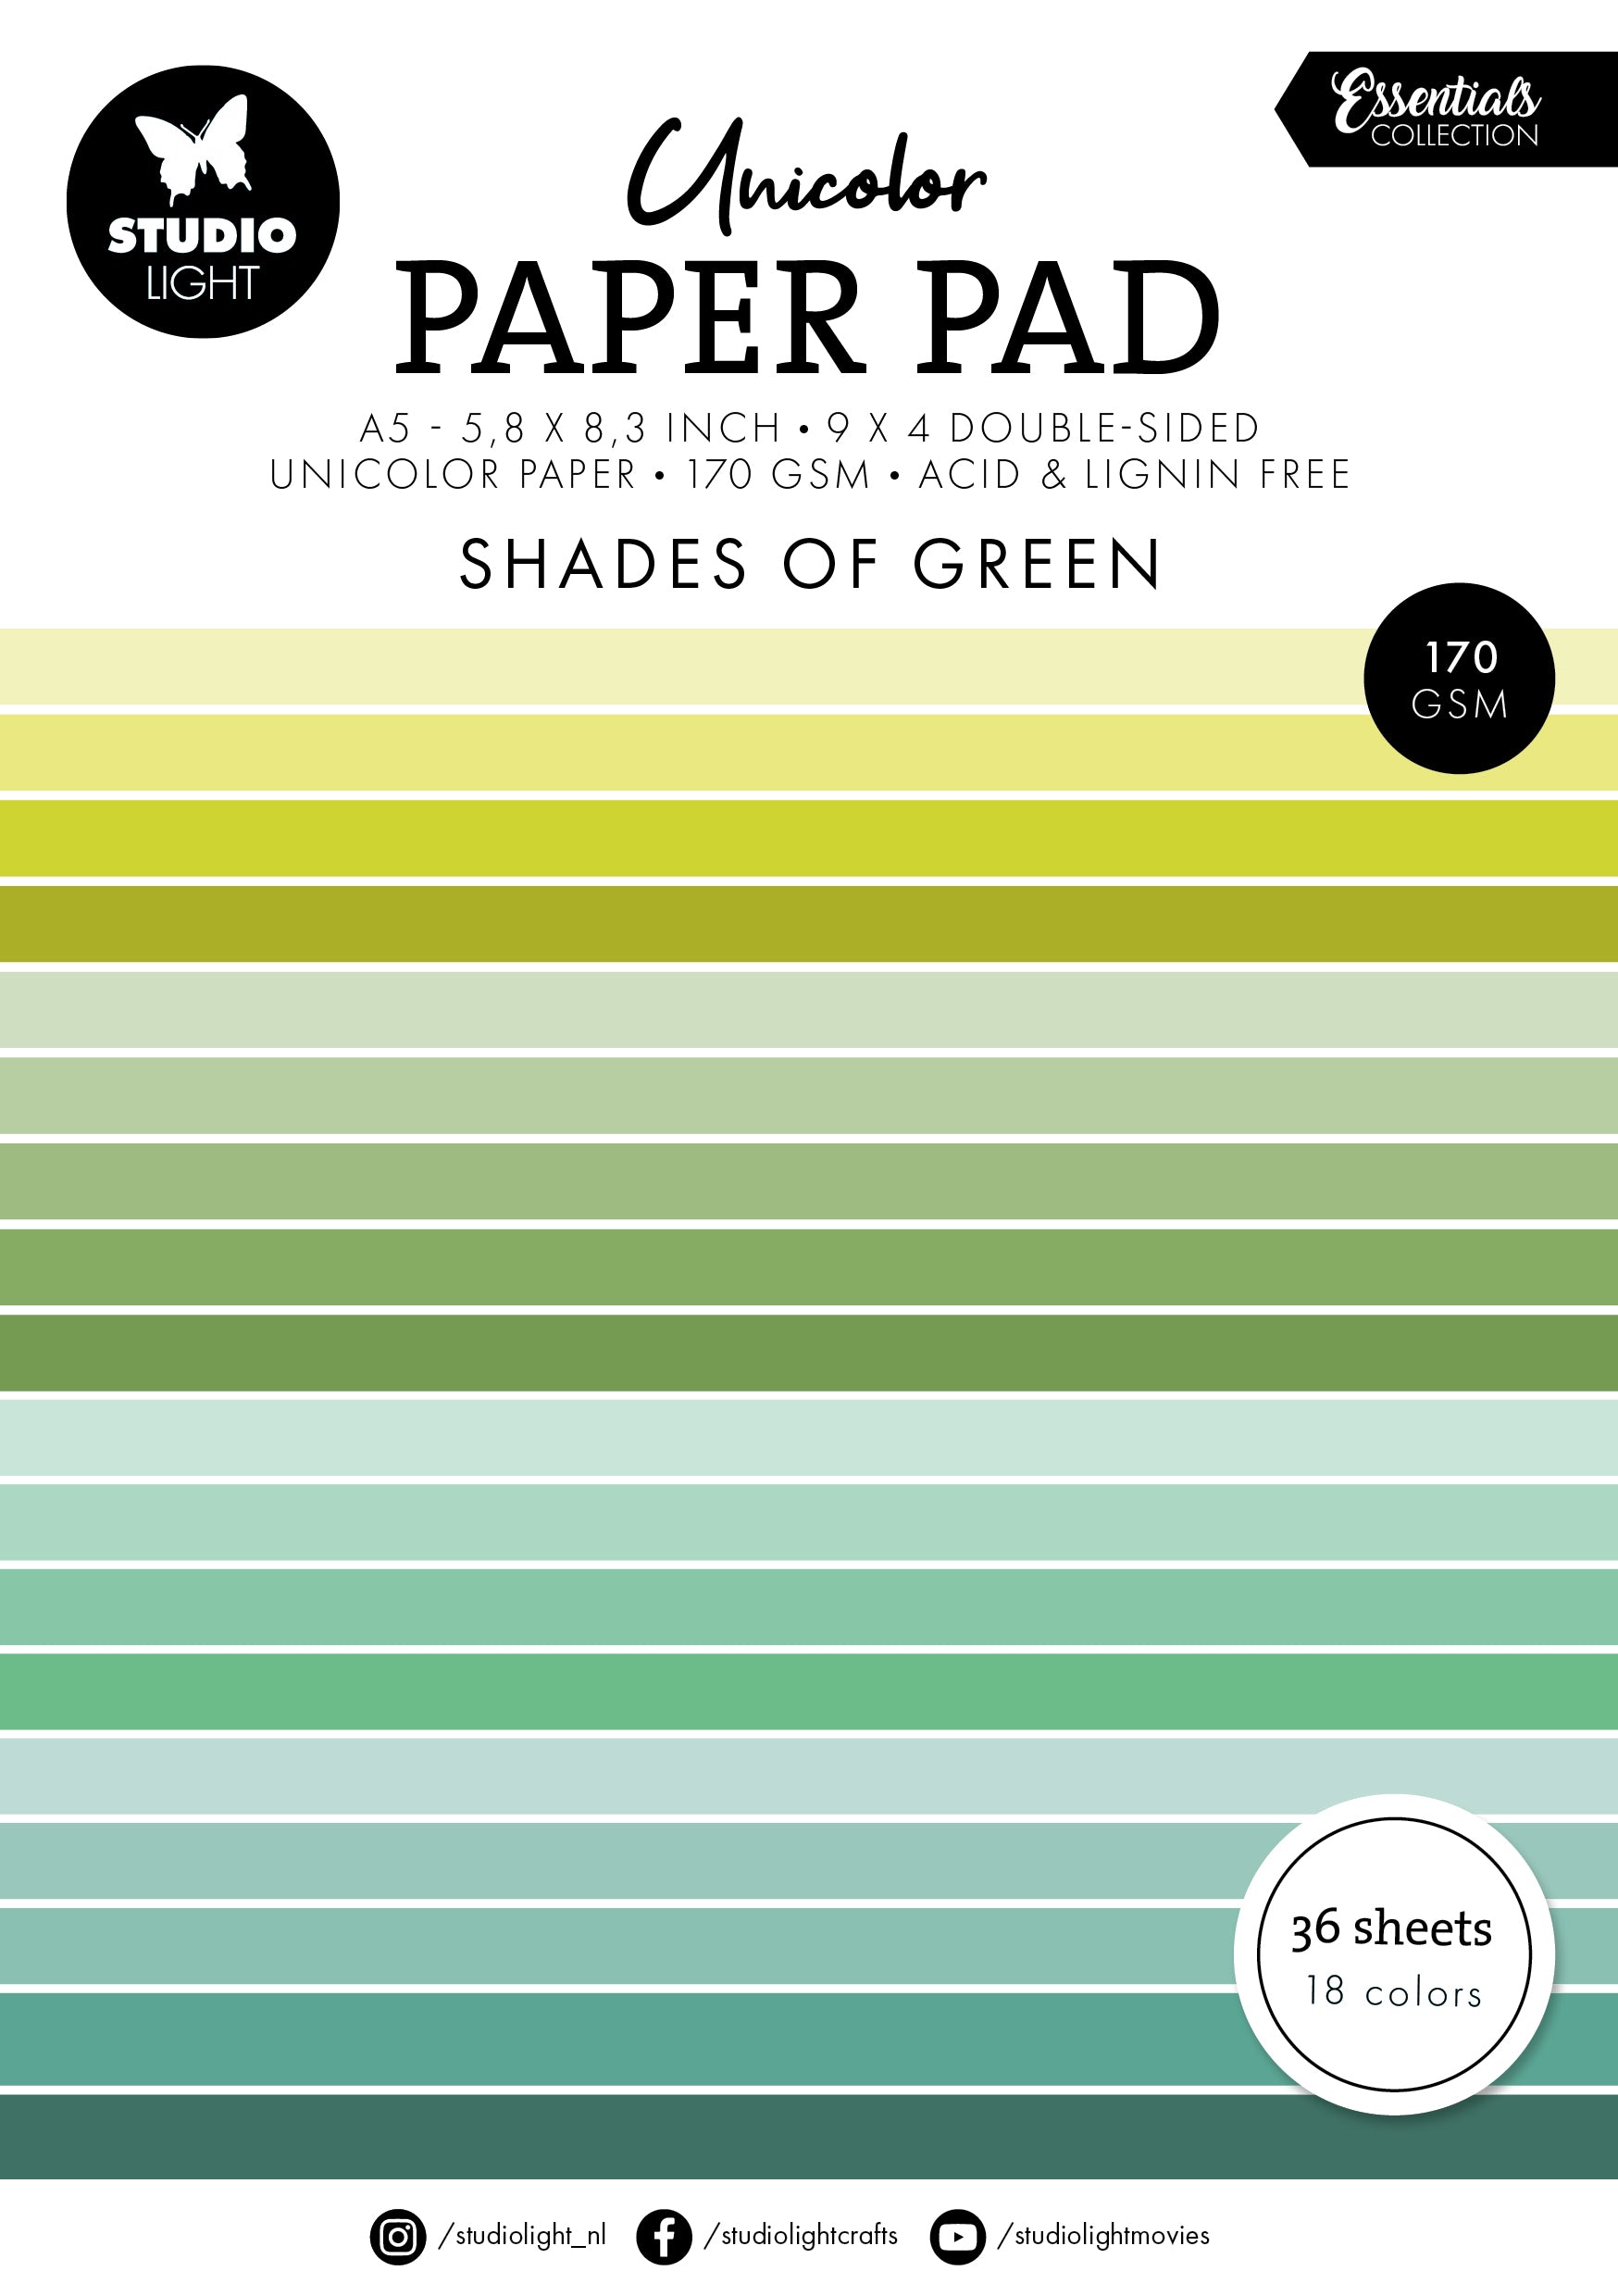 SL Unicolor Paper Pad Shades Of Green Essentials 36 SH